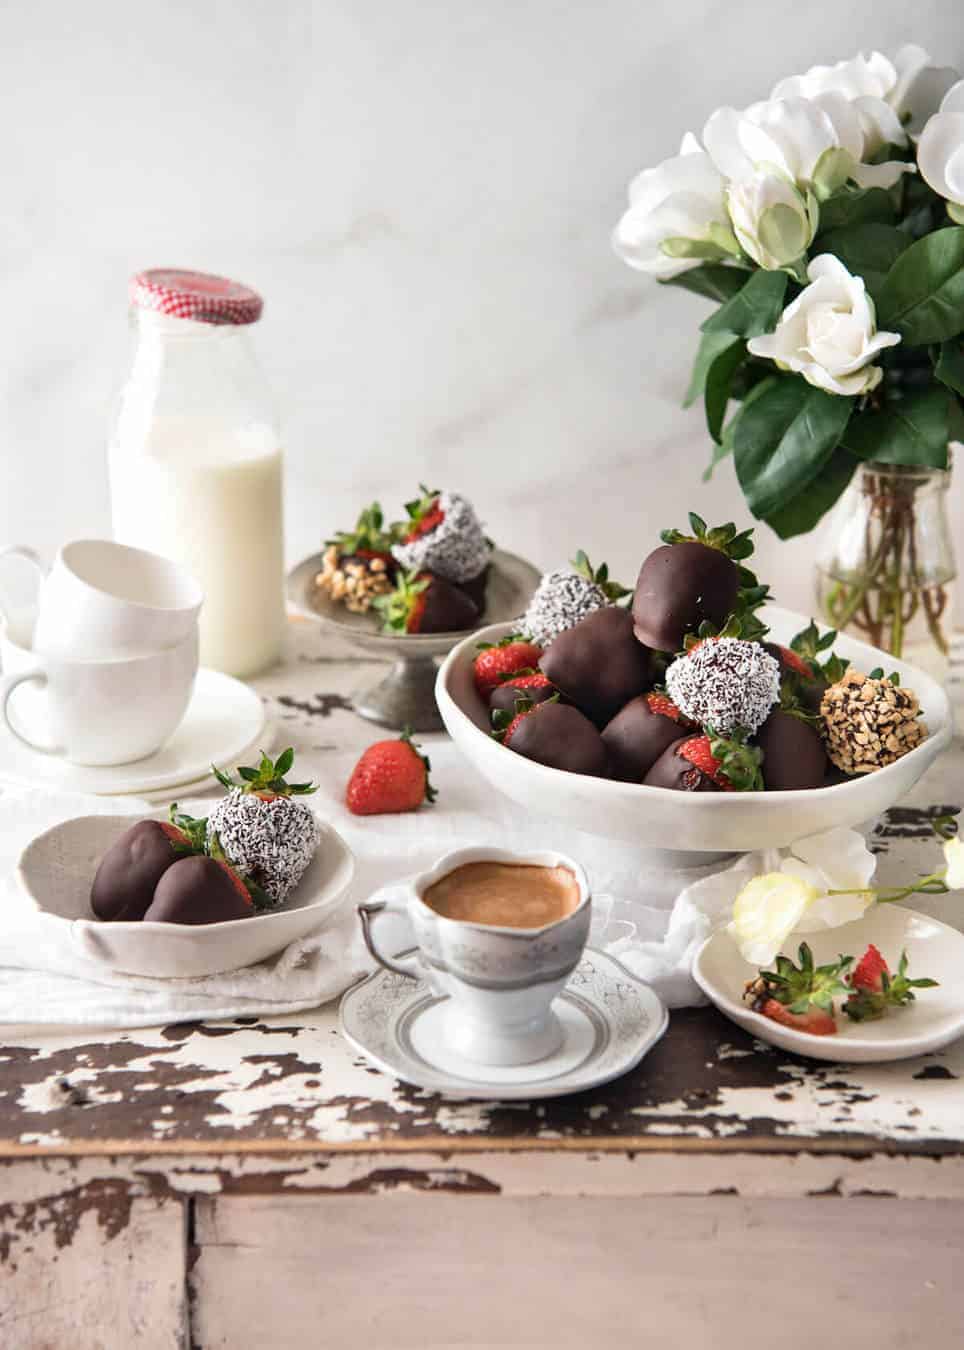 表用巧克力覆盖的草莓，咖啡和牛奶瓶盖。gydF4y2Ba